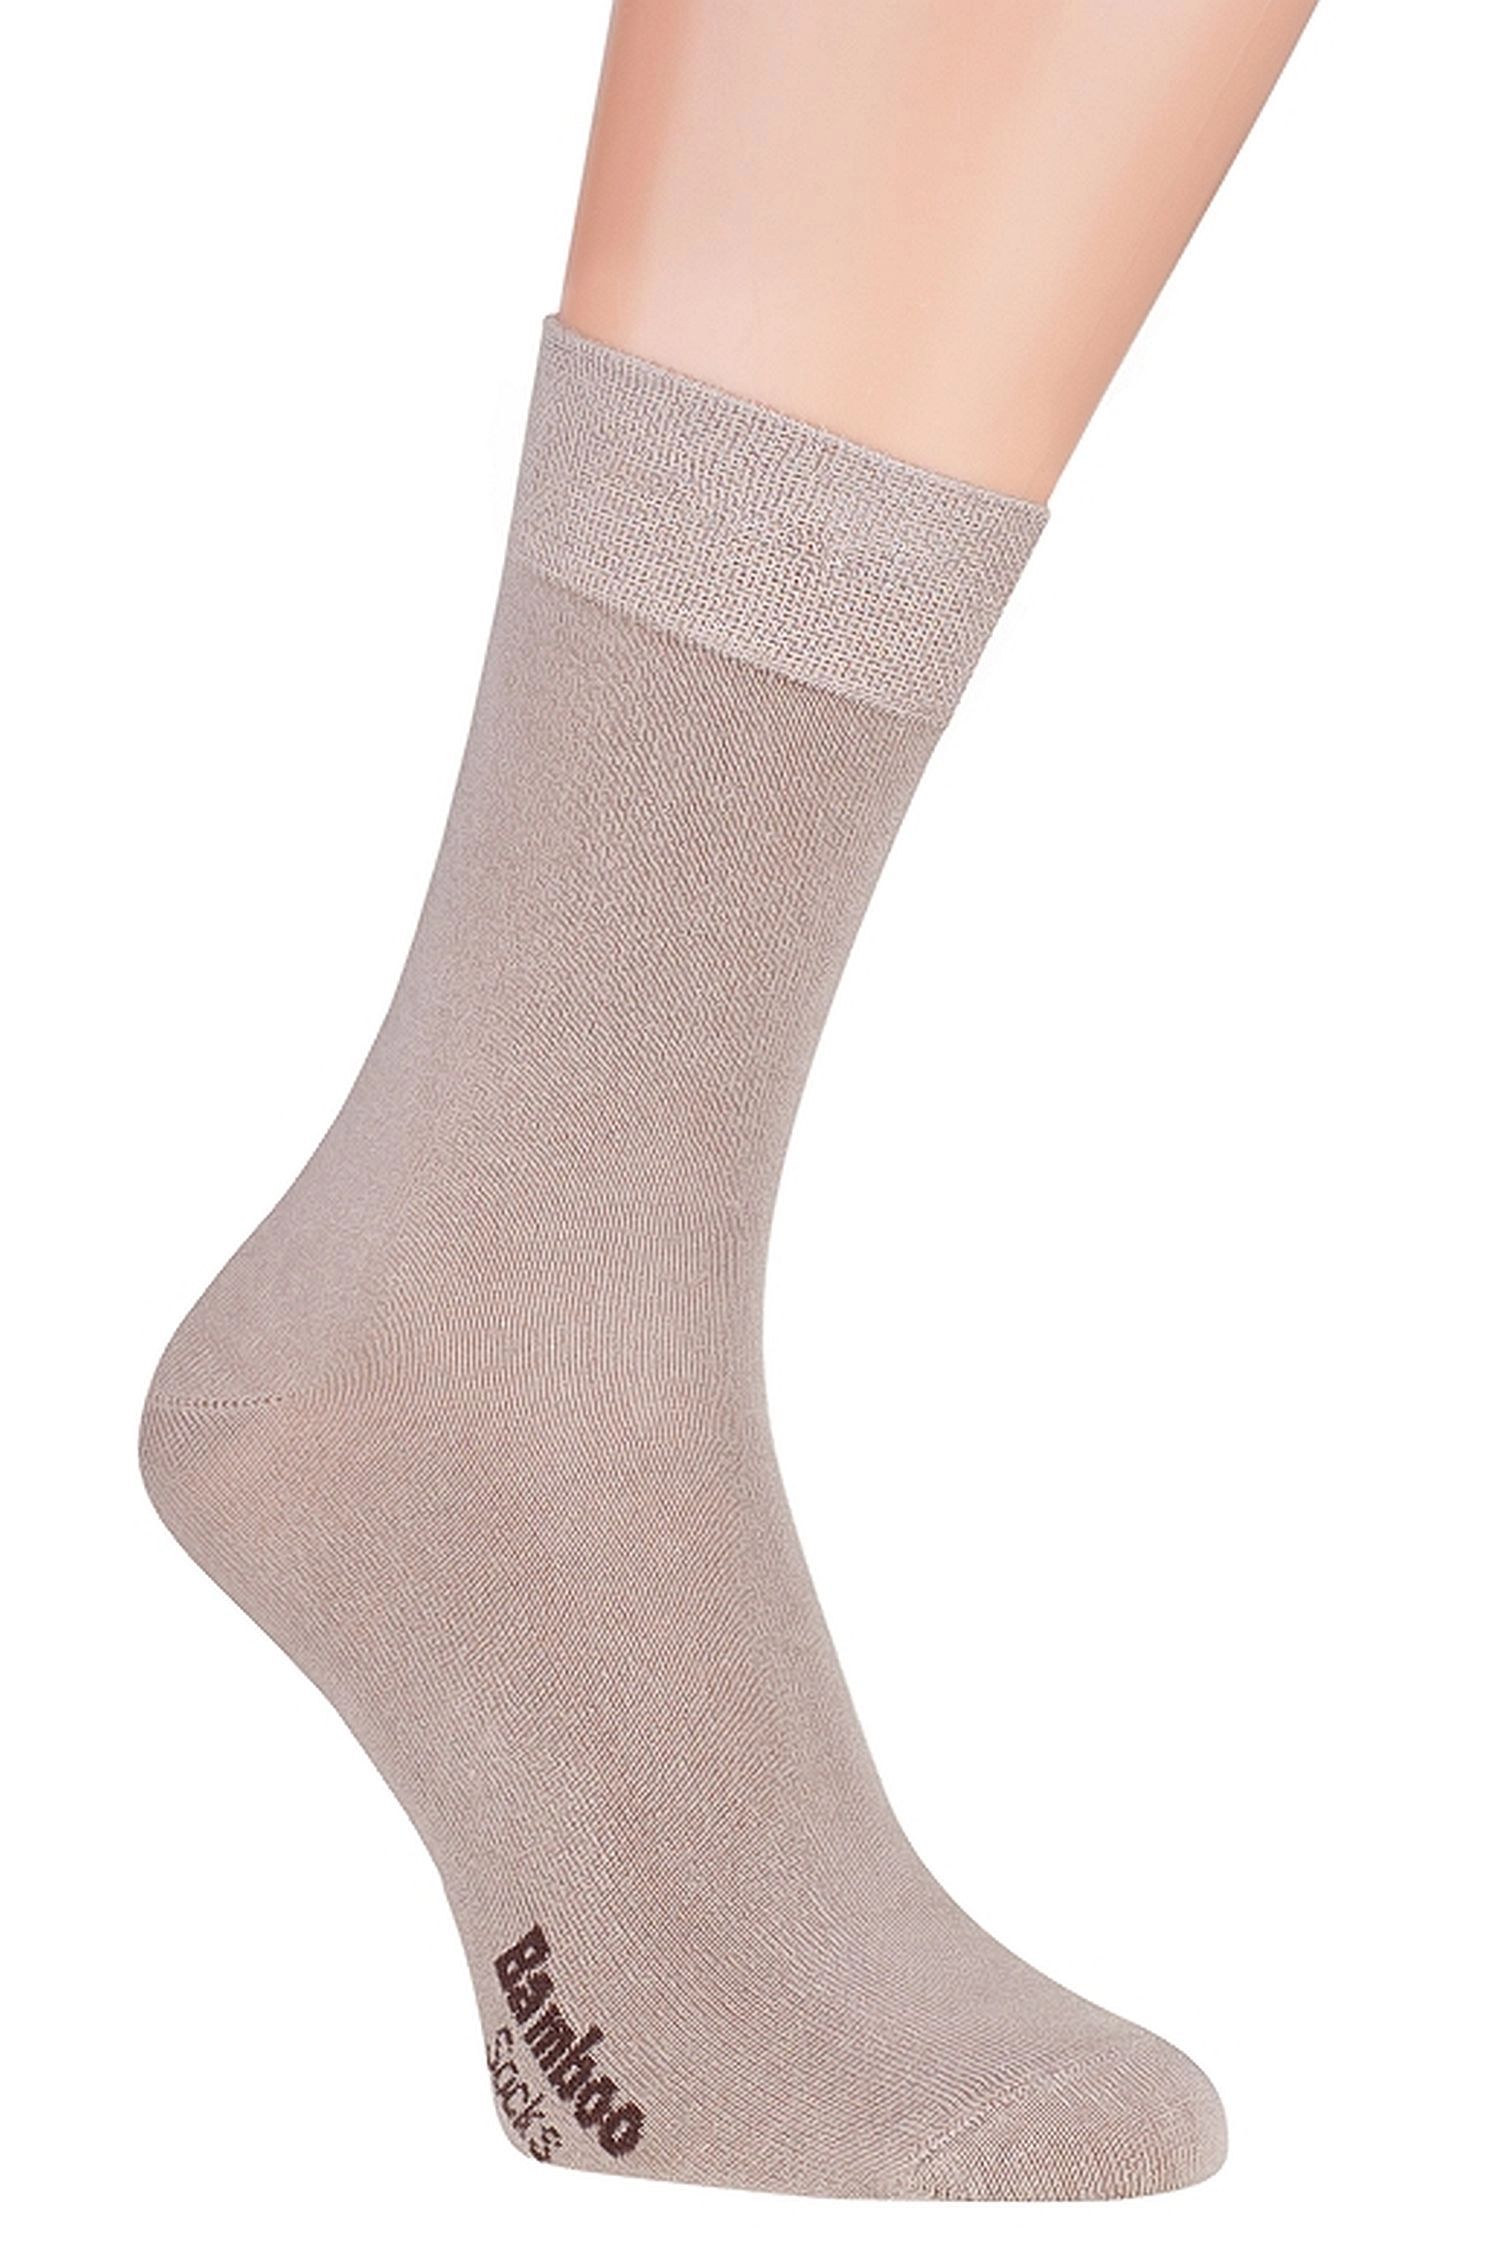 E-shop Dámske ponožky 09 light beige